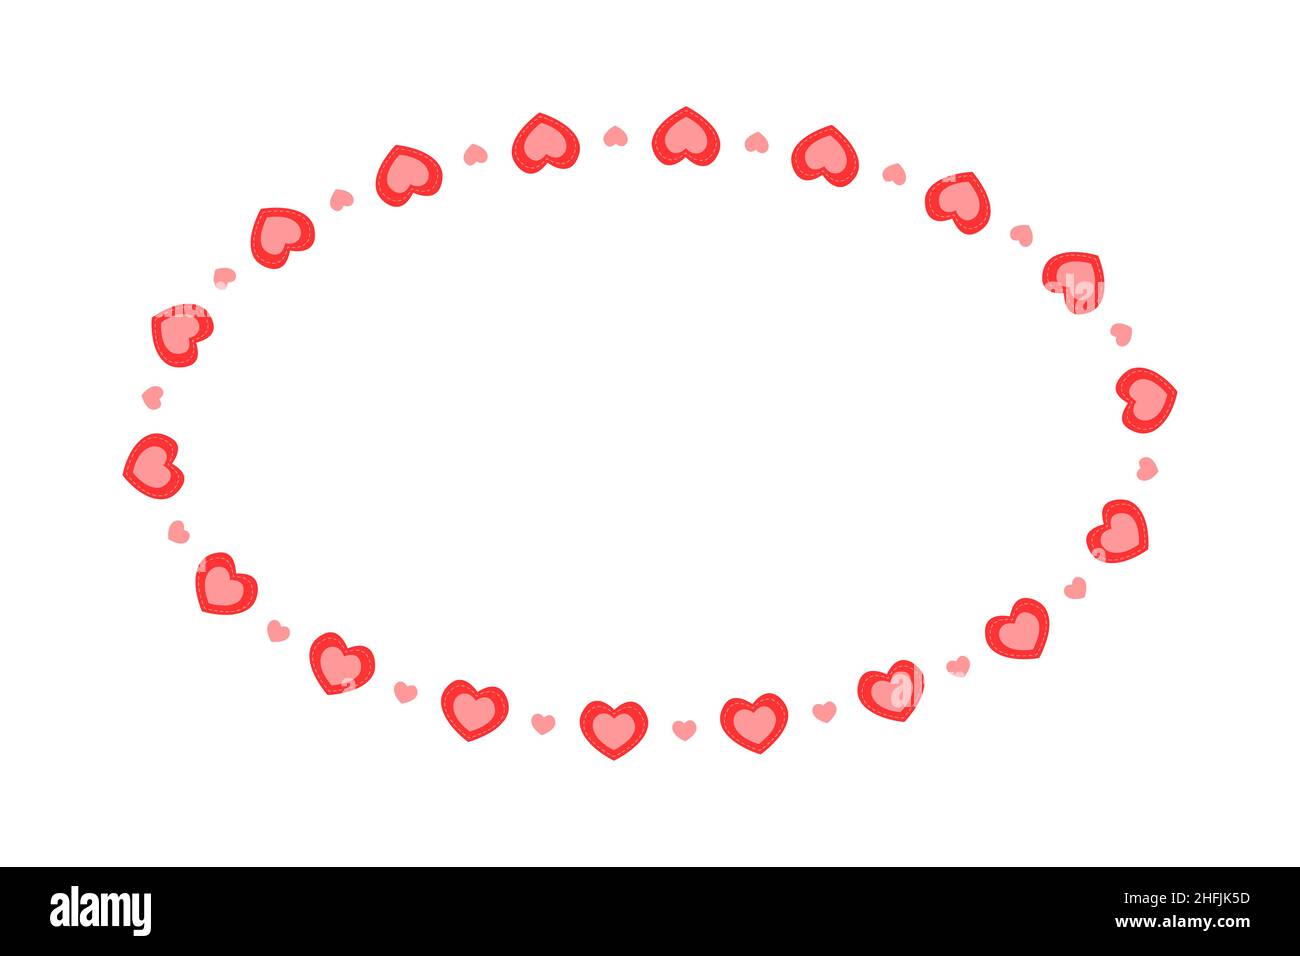 Ovaler Rahmen mit Herzen. Vorlage für Valentinskarte, Hochzeitseinladung, Foto, Bild, Banner. Flache Vektorgrafik isoliert auf weißem Hintergrund. Stock Vektor